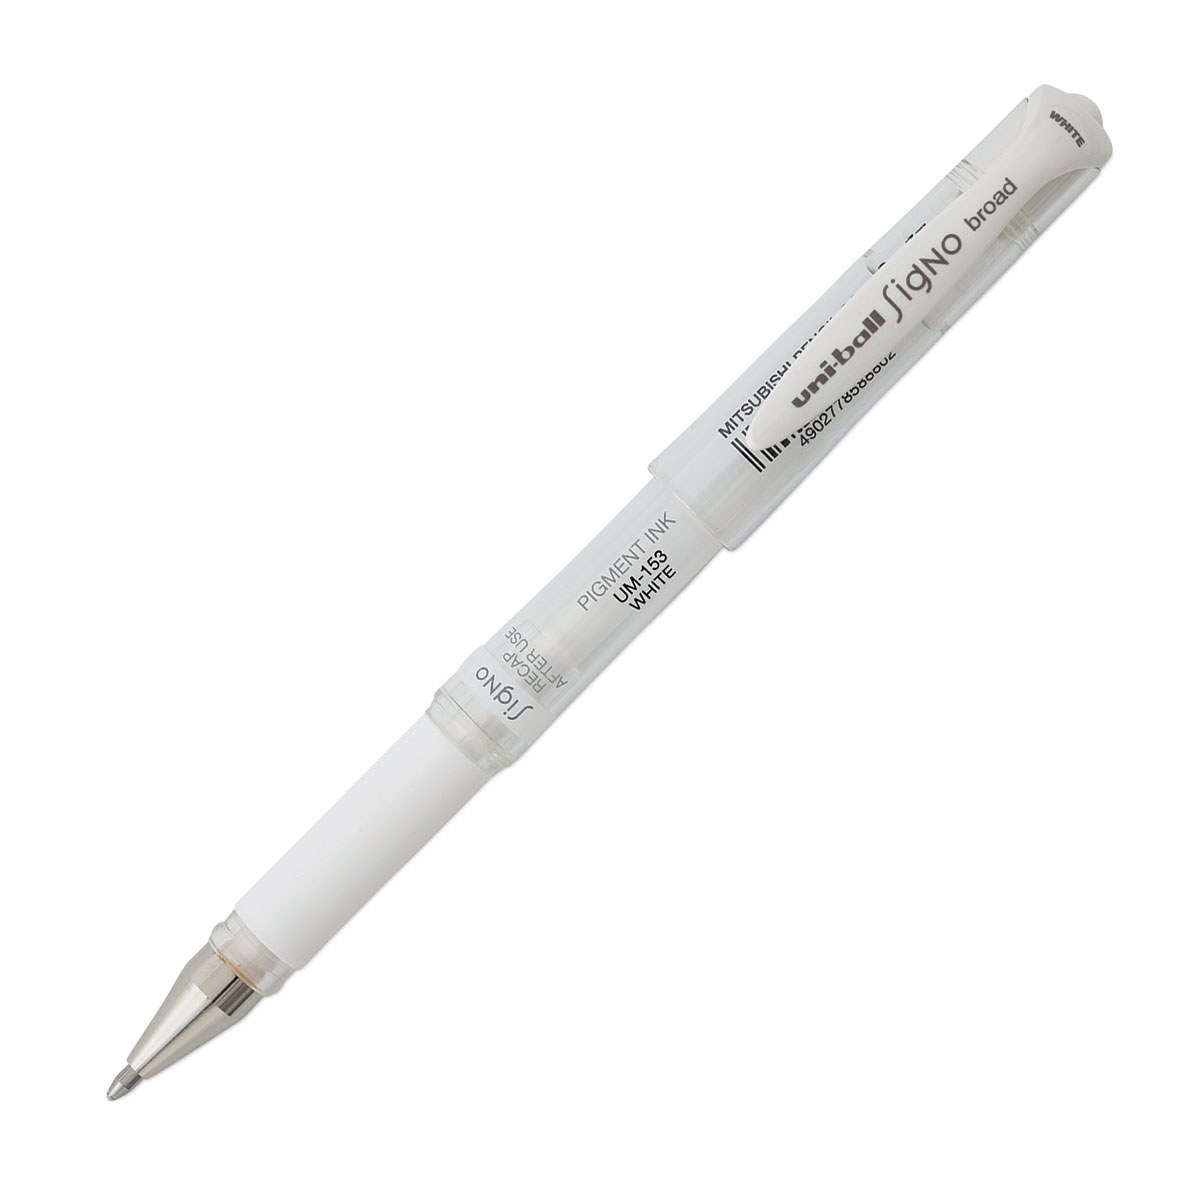  Uni-ball Signo Broad UM-153 Gel Pen - White Ink - 10 Pen  Bundle